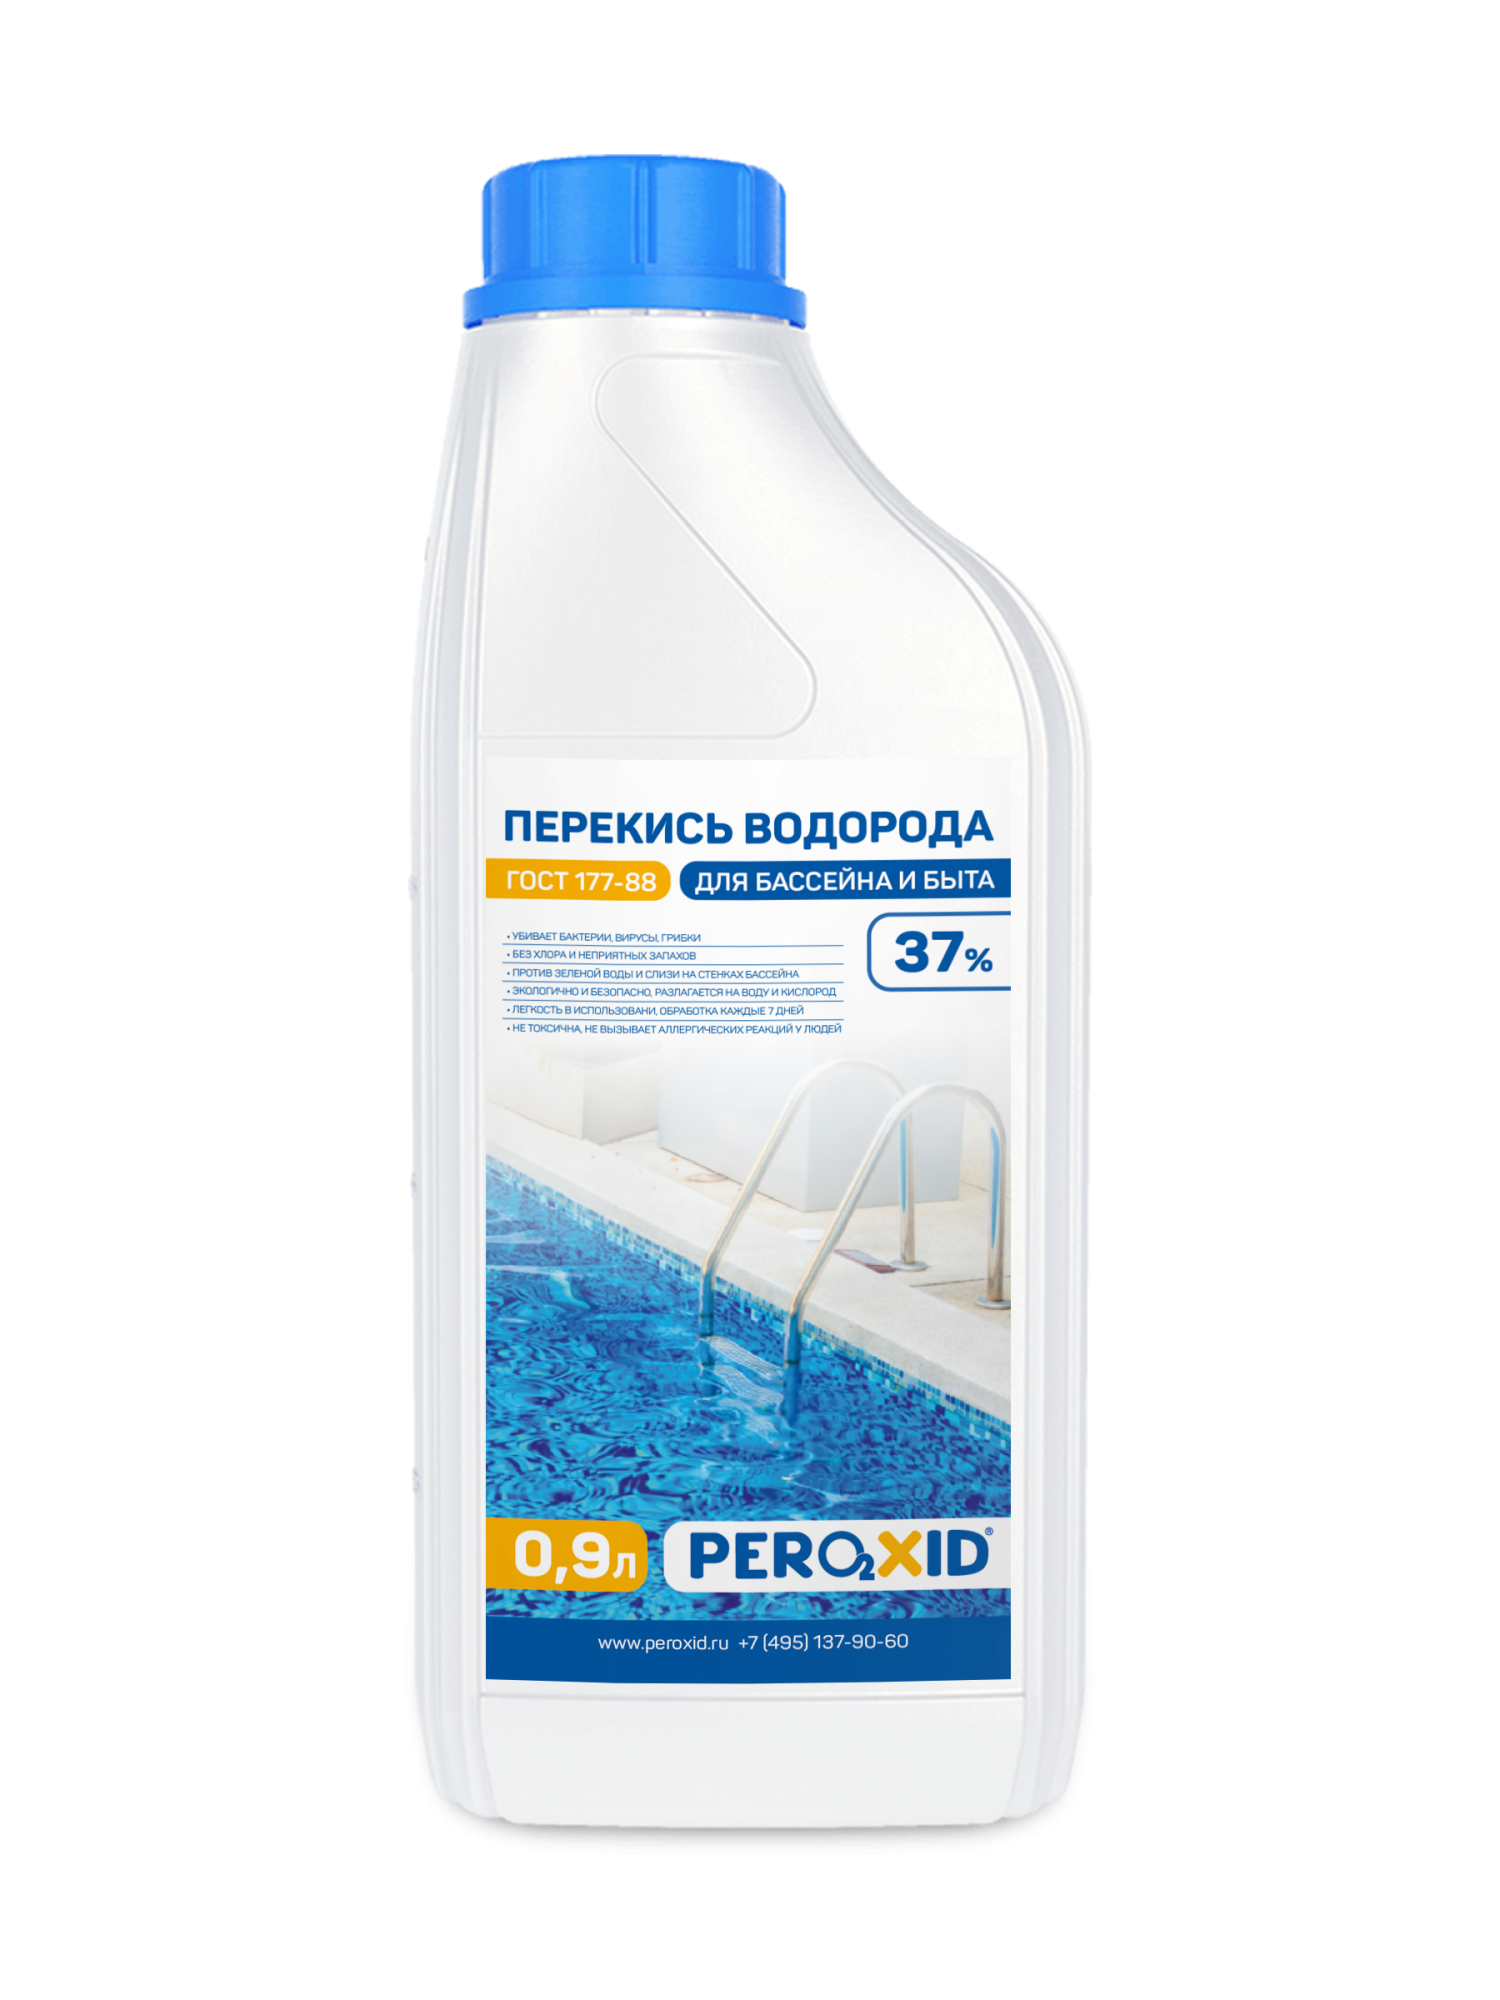 Перекись водорода для бассейна PEROXID 37% марка В ГОСТ 177-88  0.9 л/1 кг